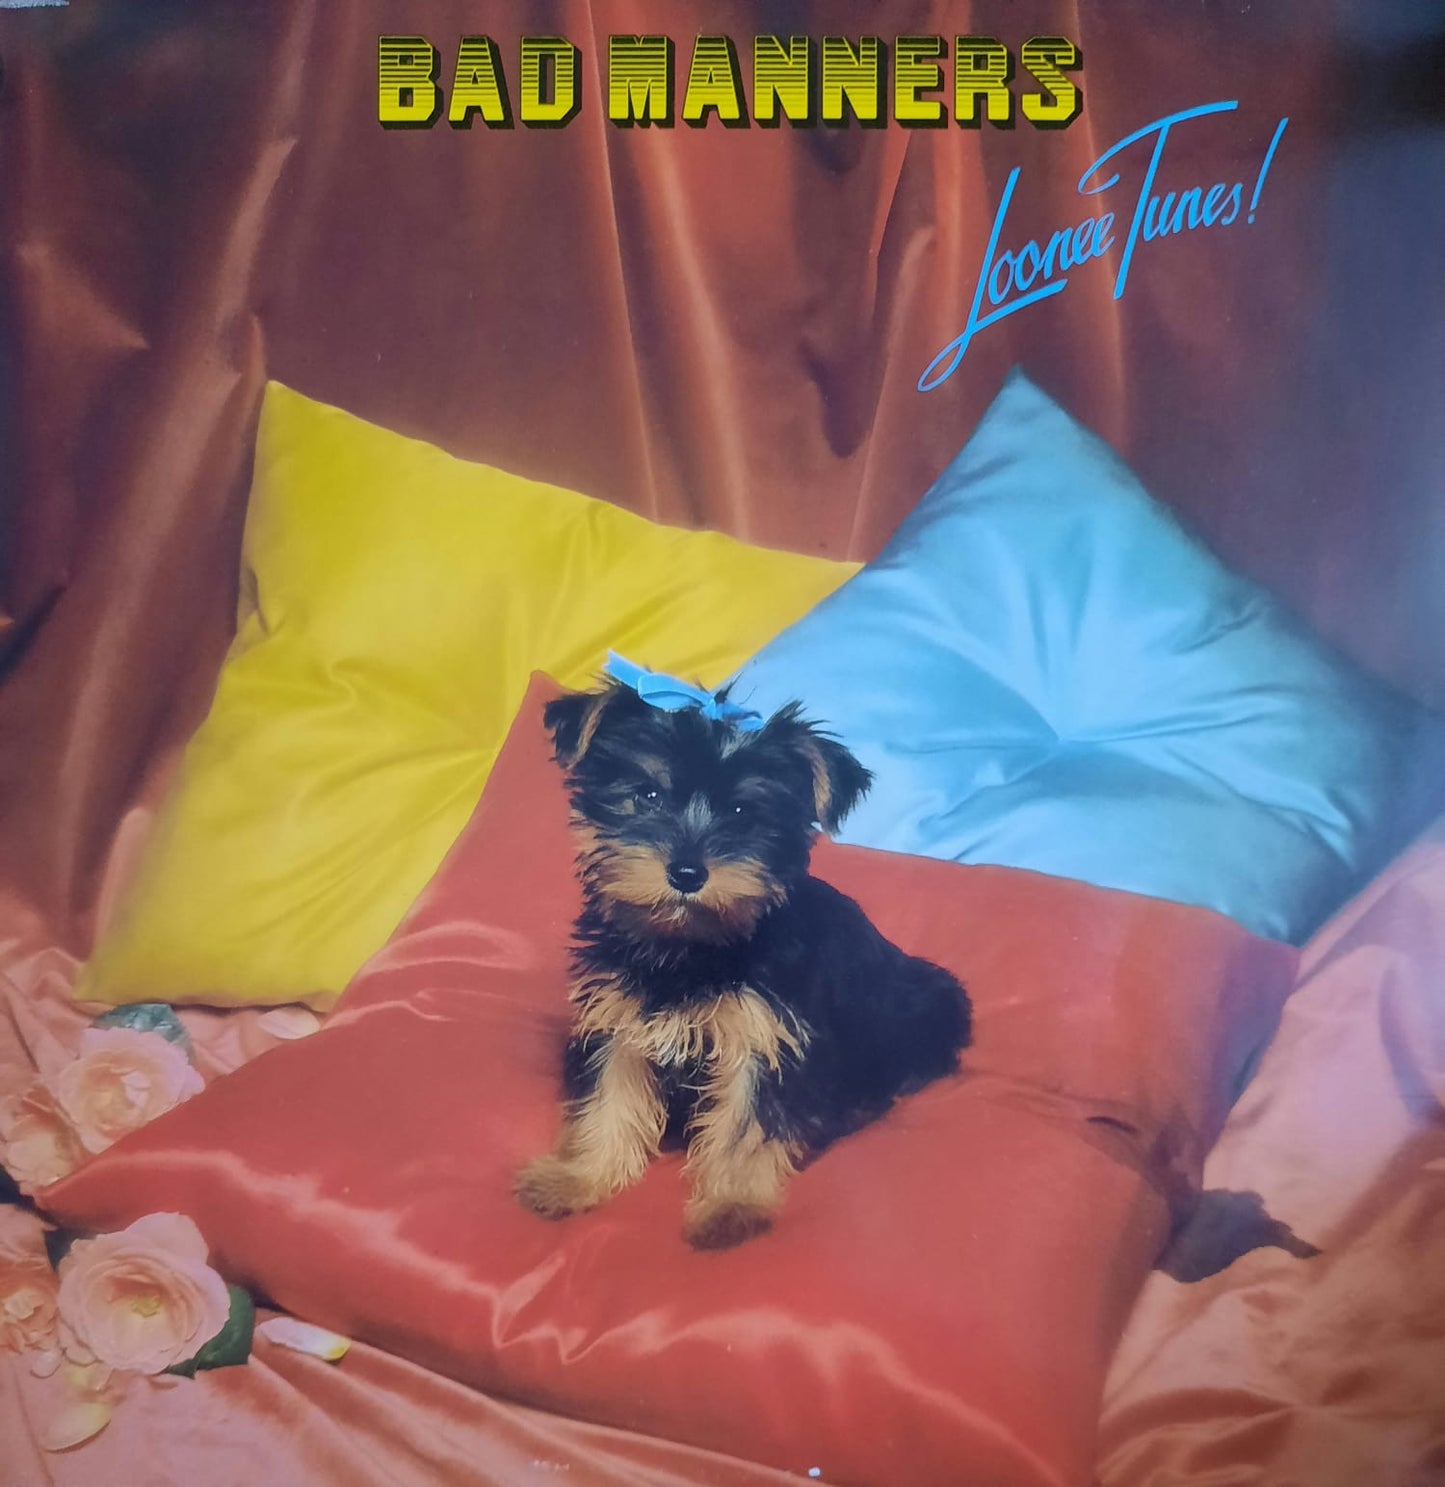 Bad Manners - Loonee Tunes! (LP, Países Bajos, 1980)